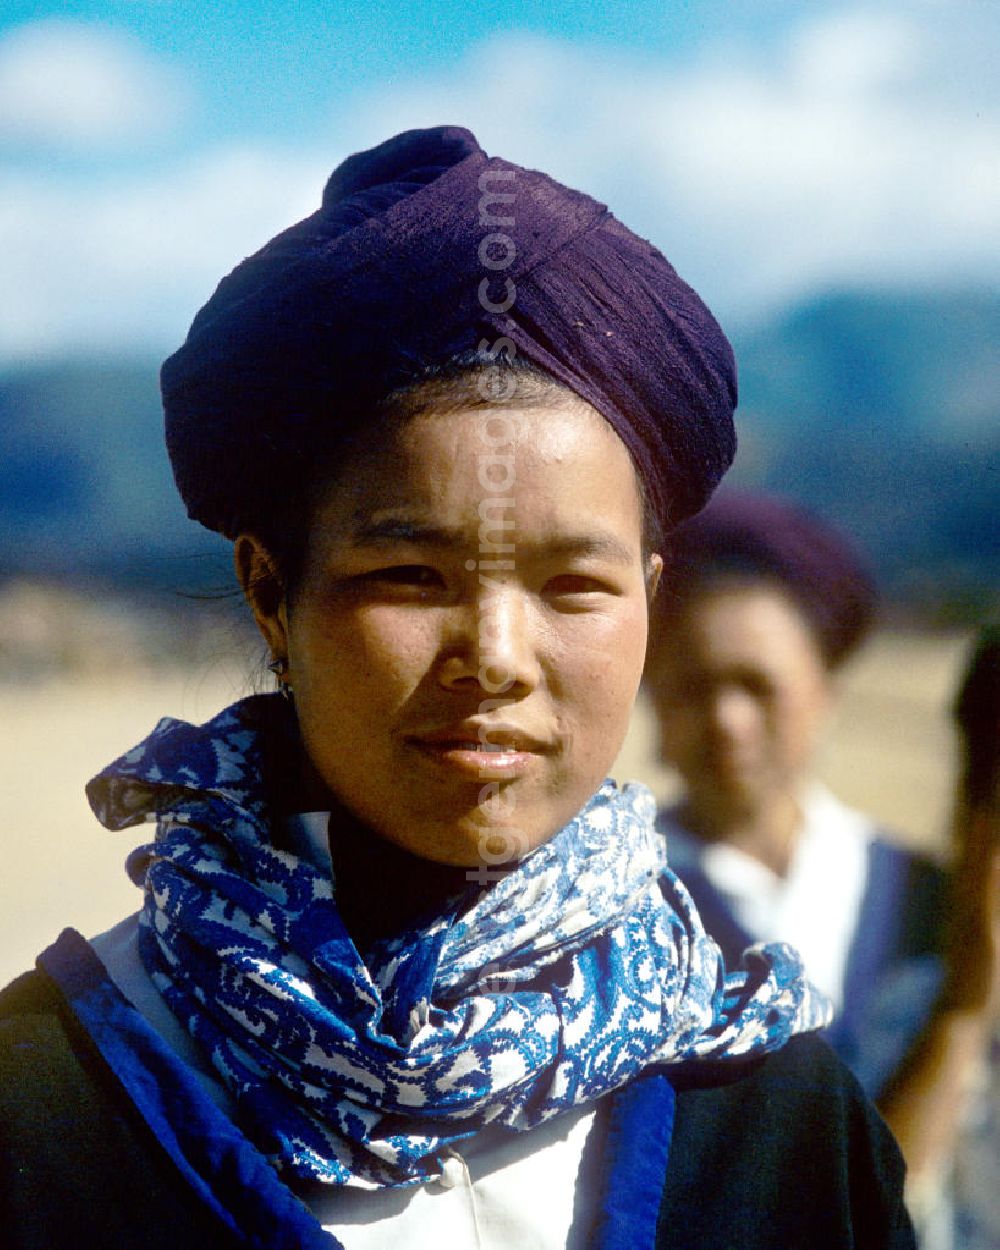 GDR picture archive: Xieng Khouang - Mädchen aus dem Volksstamm der Meo (auch Hmong) nahe sogenannten Ebene der Tonkrüge in der Provinz Xieng Khouang in der Demokratischen Volksrepublik Laos, aufgenommen am 8.1.1977. Die Hmong waren im Vietnam-Krieg involviert. In dessen Folge gehörten sie zu einer verfolgten und zurückgezogen lebenden Minderheit in Laos.